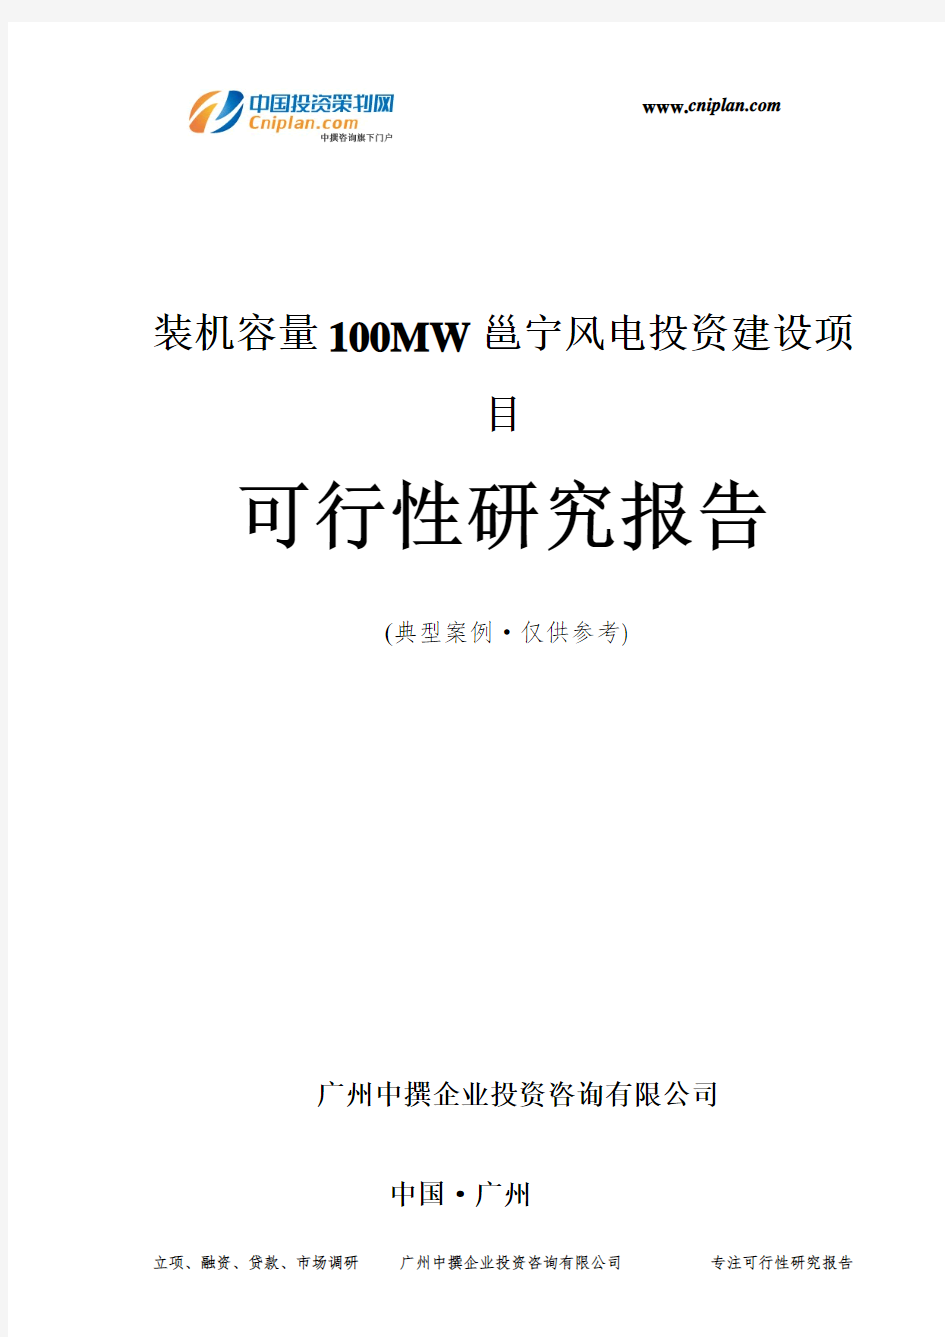 装机容量100MW邕宁风电投资建设项目可行性研究报告-广州中撰咨询